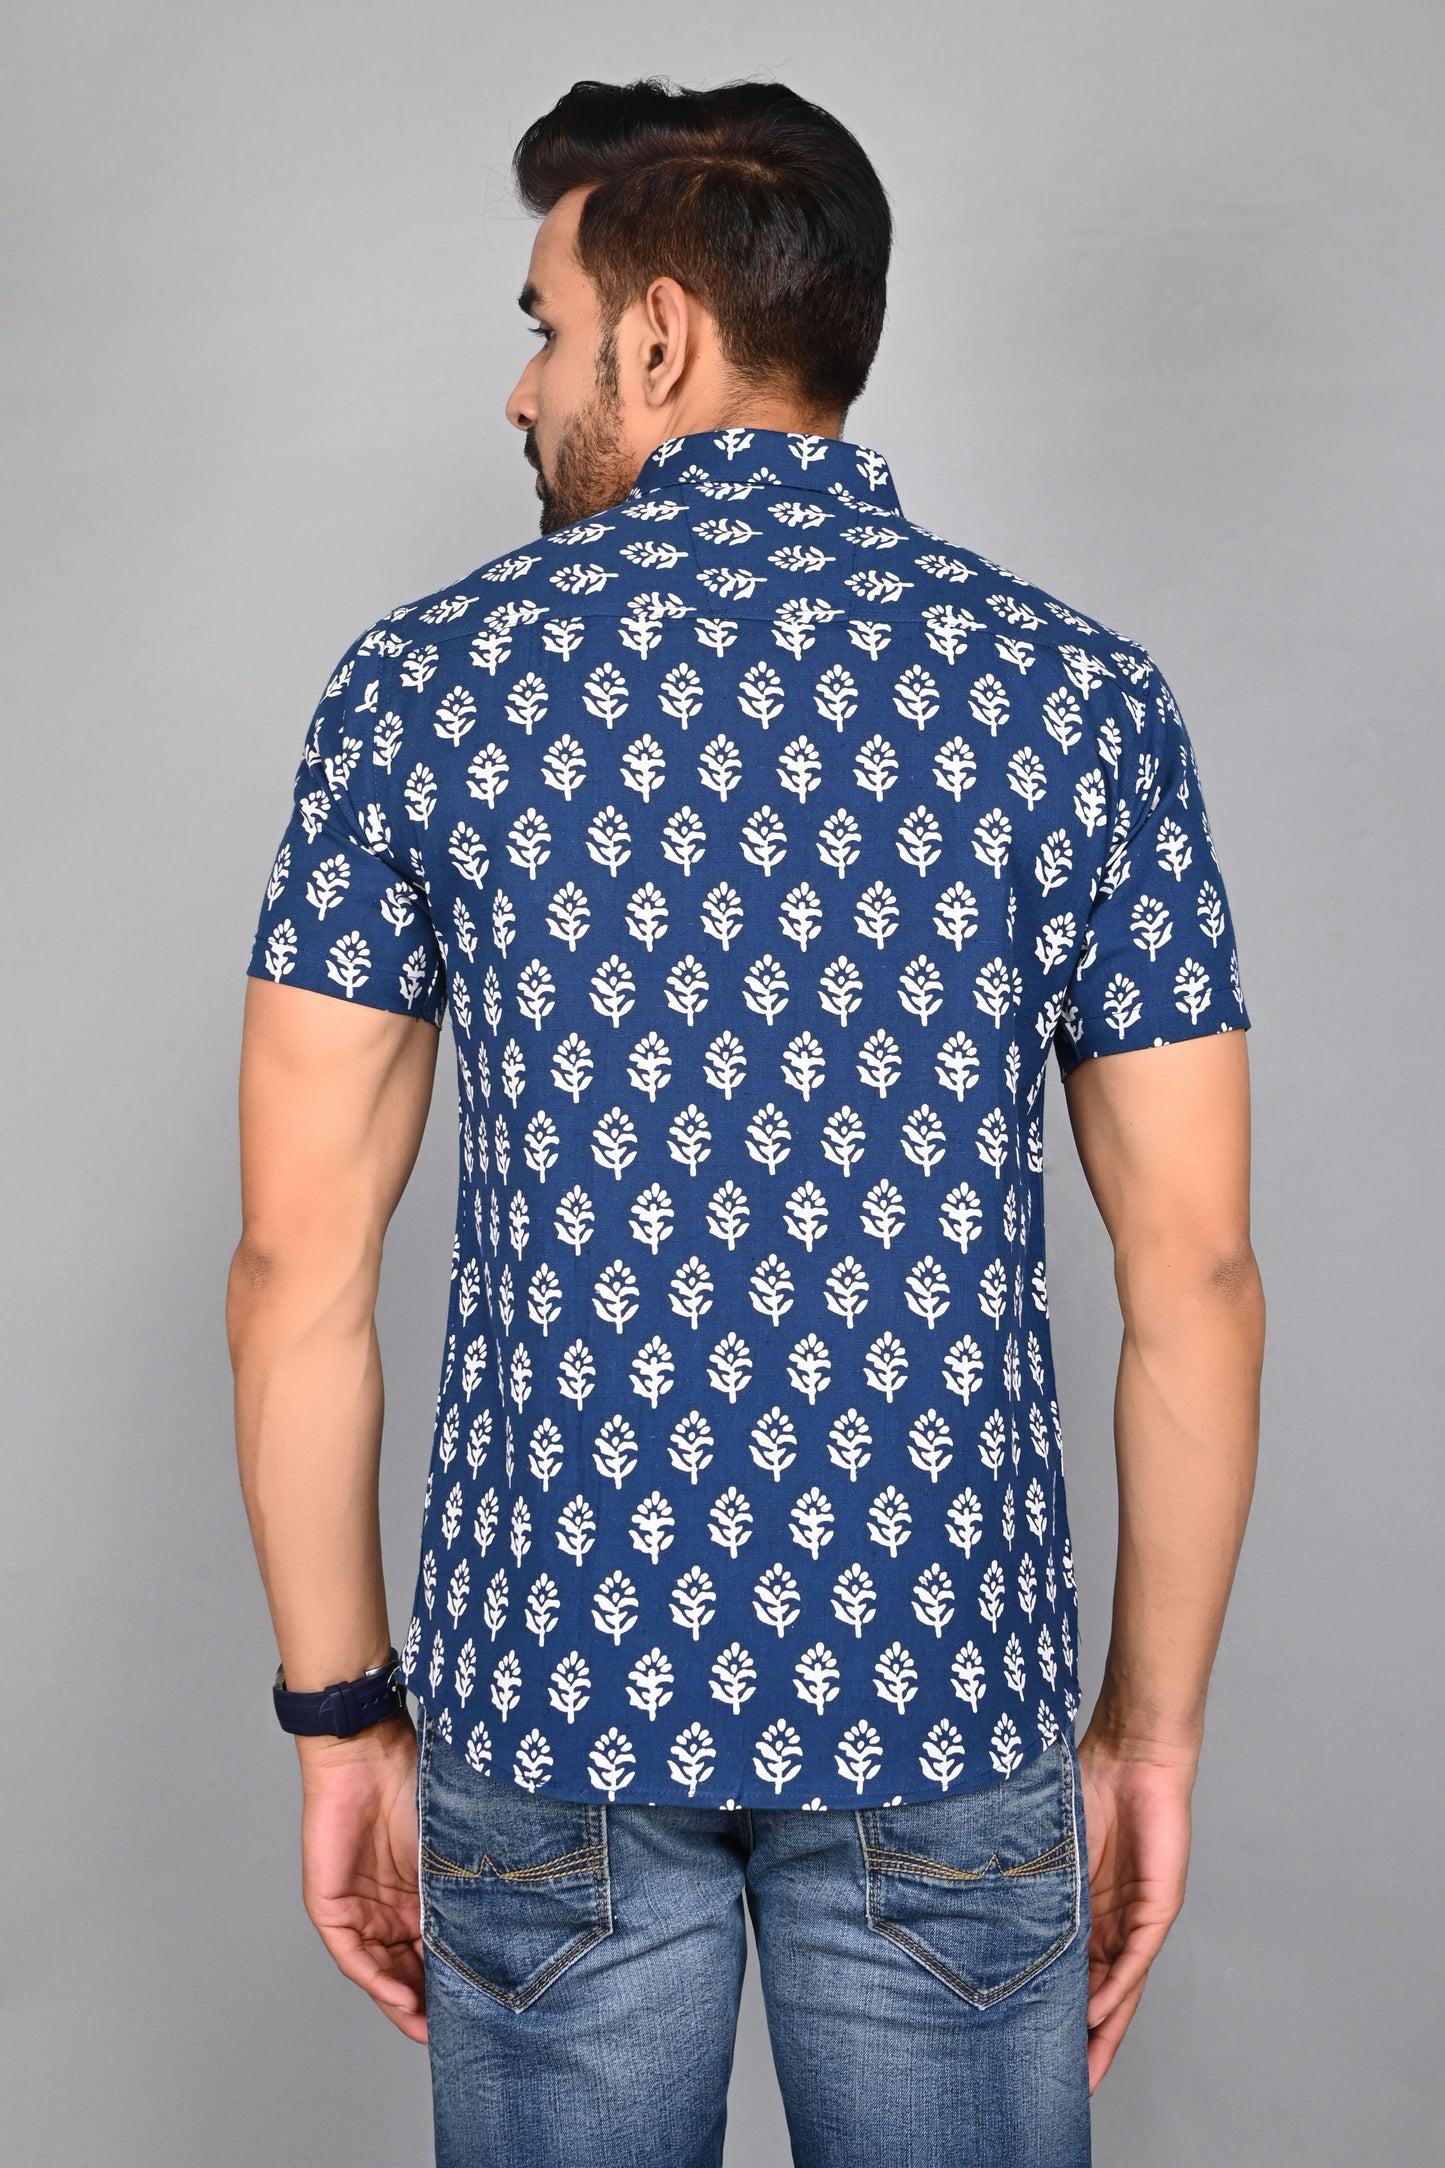 Men's Printed buti Half-Sleeves shirts